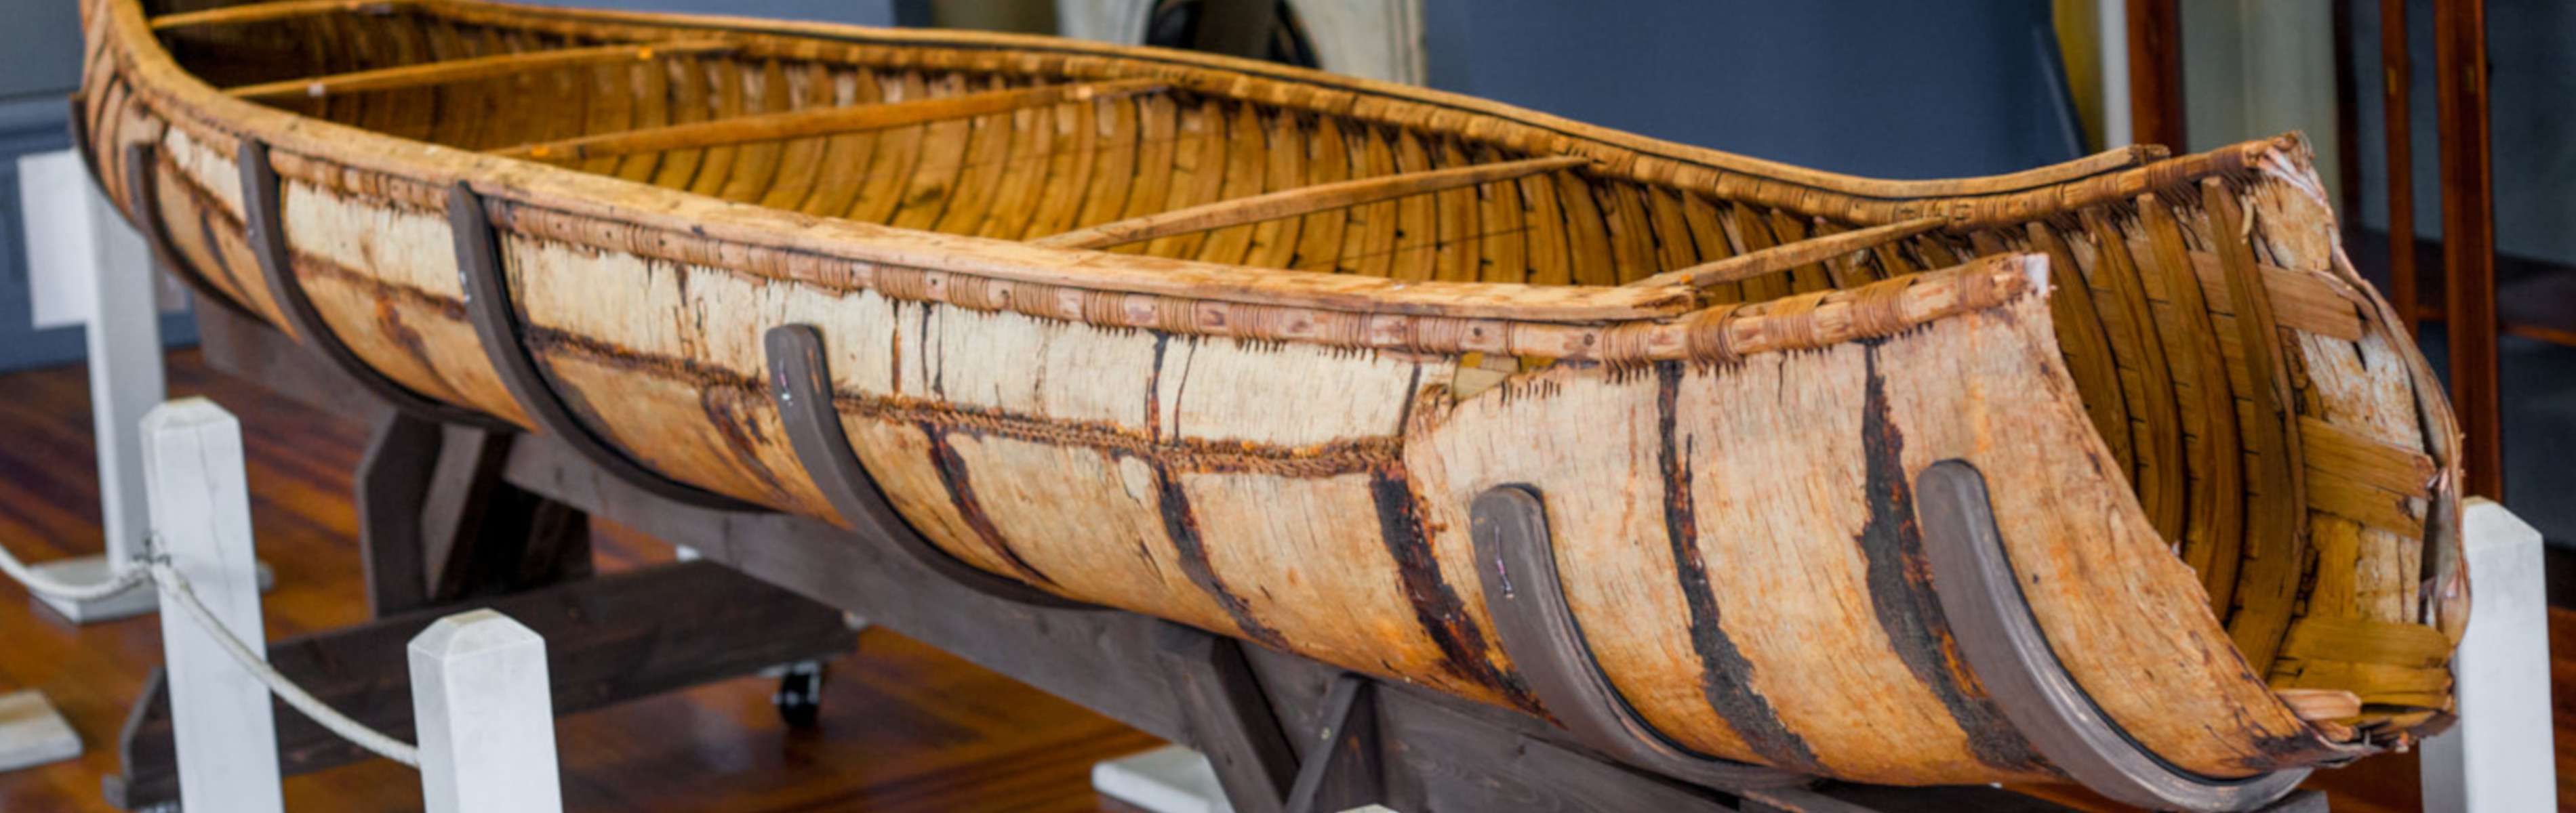 The-birch-bark-canoe